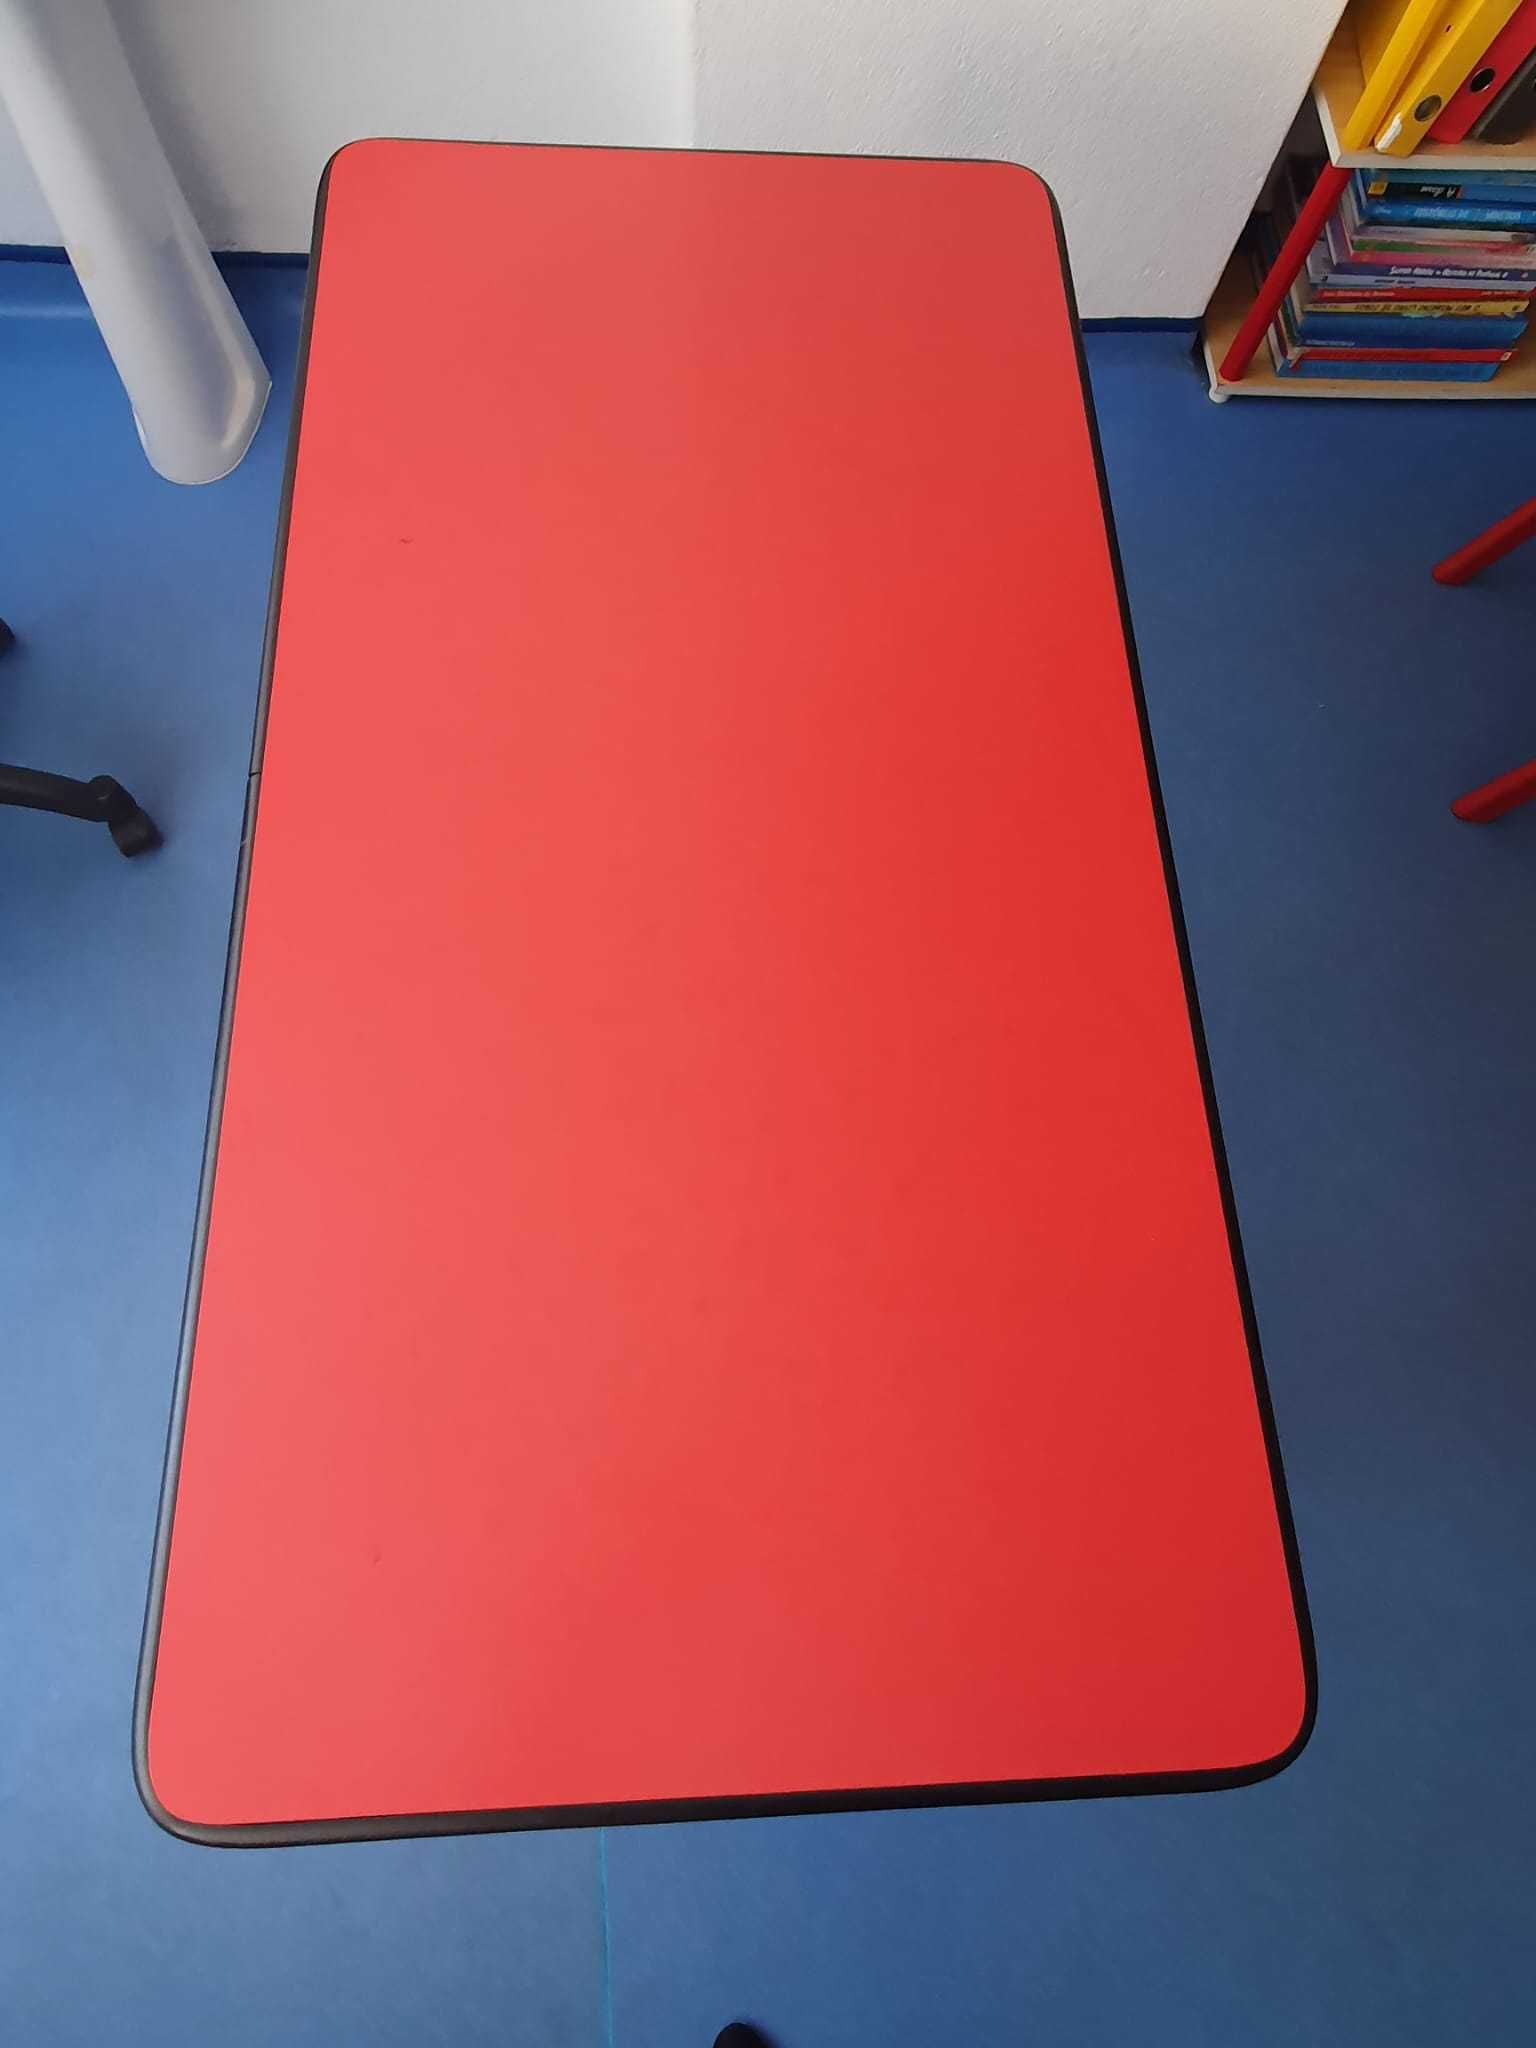 Mesas vermelhas com pés azuis 120x60x65